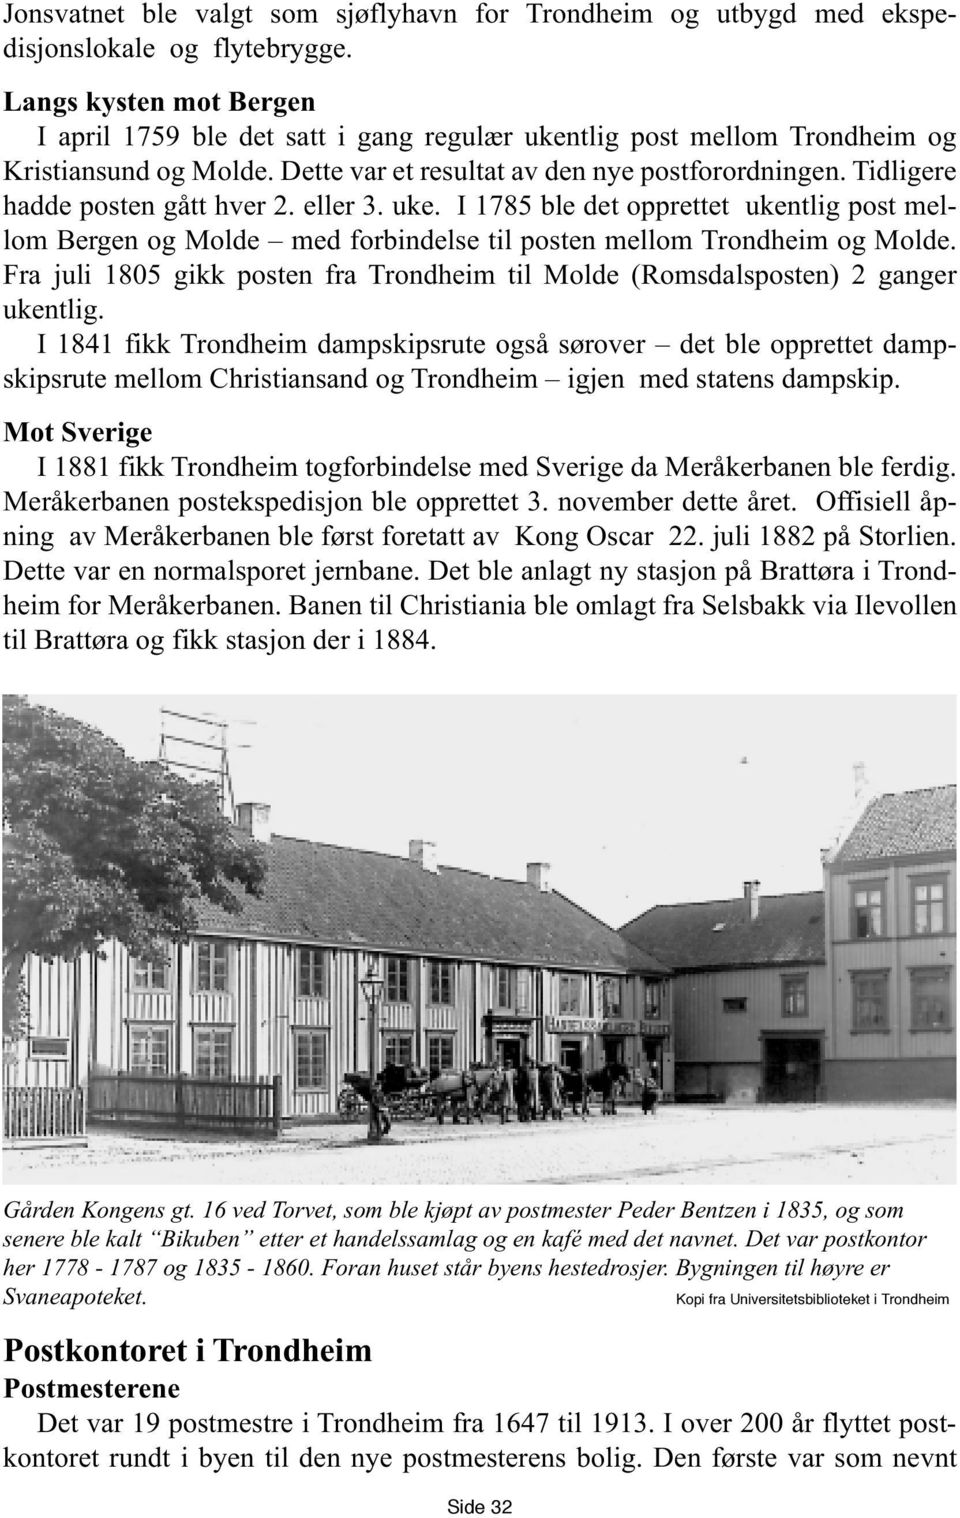 Tidligere hadde posten gått hver 2. eller 3. uke. I 1785 ble det opprettet ukentlig post mellom Bergen og Molde med forbindelse til posten mellom Trondheim og Molde.